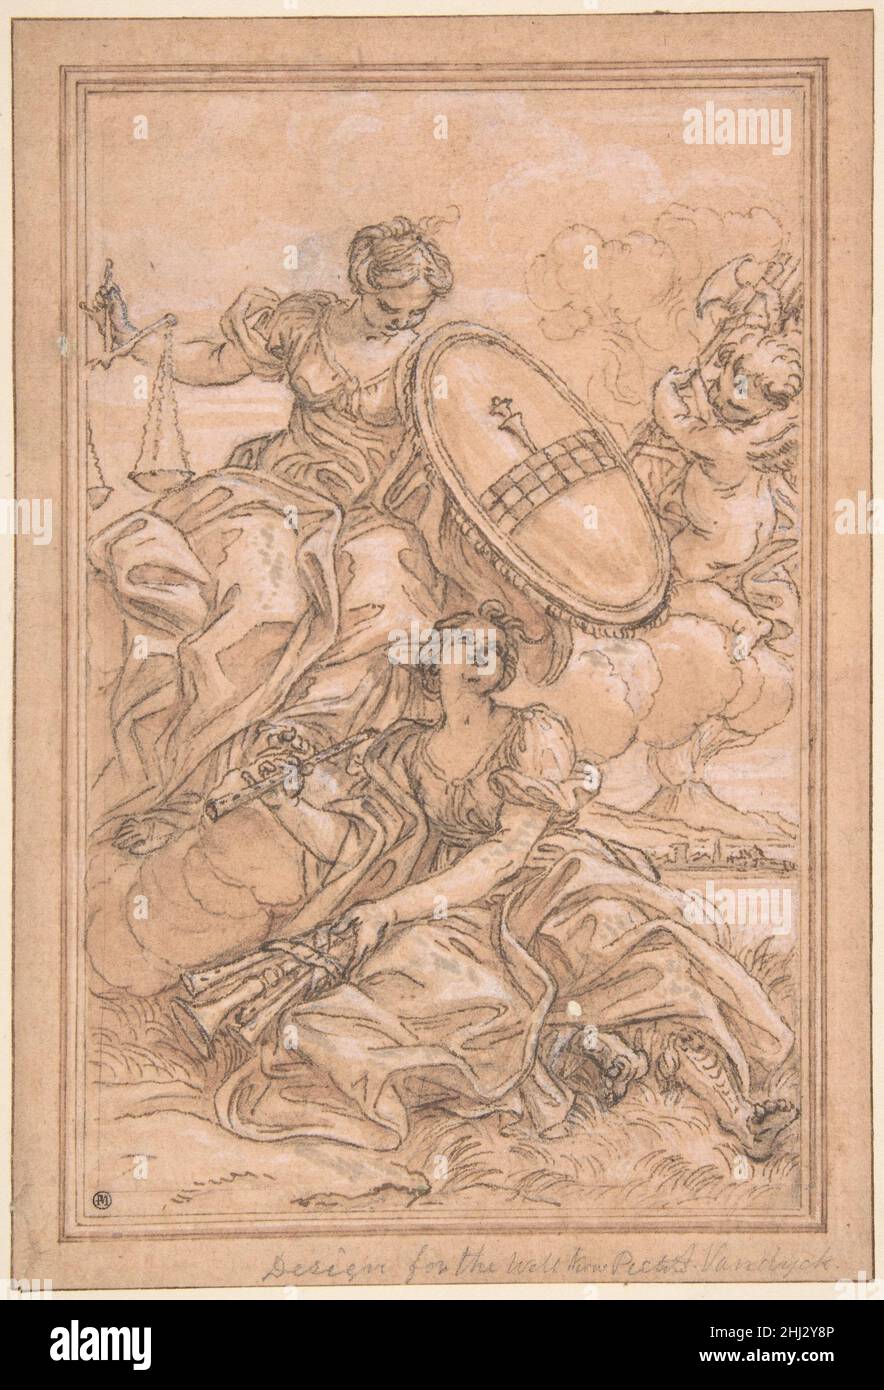 Allegorische Komposition: Musik und Gerechtigkeit mit dem Spinola-Wappen 1639–1709 Giovanni Battista Gaulli (Il Baciccio) Italienisch einst im Besitz des berühmten französischen Sammlers Pierre-Jean Mariette (1694-1774), erscheint diese hochgearbeitete Zeichnung im Verkaufskatalog seiner Sammlung von 1775-76. Es wurde als Vorbereitung für das Frontispiz von "Il Corradino" identifiziert, einem Libretto für eine Tragödie, die im mittelalterlichen Neapel spielt, das von Antonio Caraccio (1630-1702) geschrieben und 1694 in Rom veröffentlicht wurde (siehe Rom 1994 und Bibliographie). Die Faszes, die von einem Cherub oben rechts gehalten werden, und die Skalen sind Attribute Stockfoto